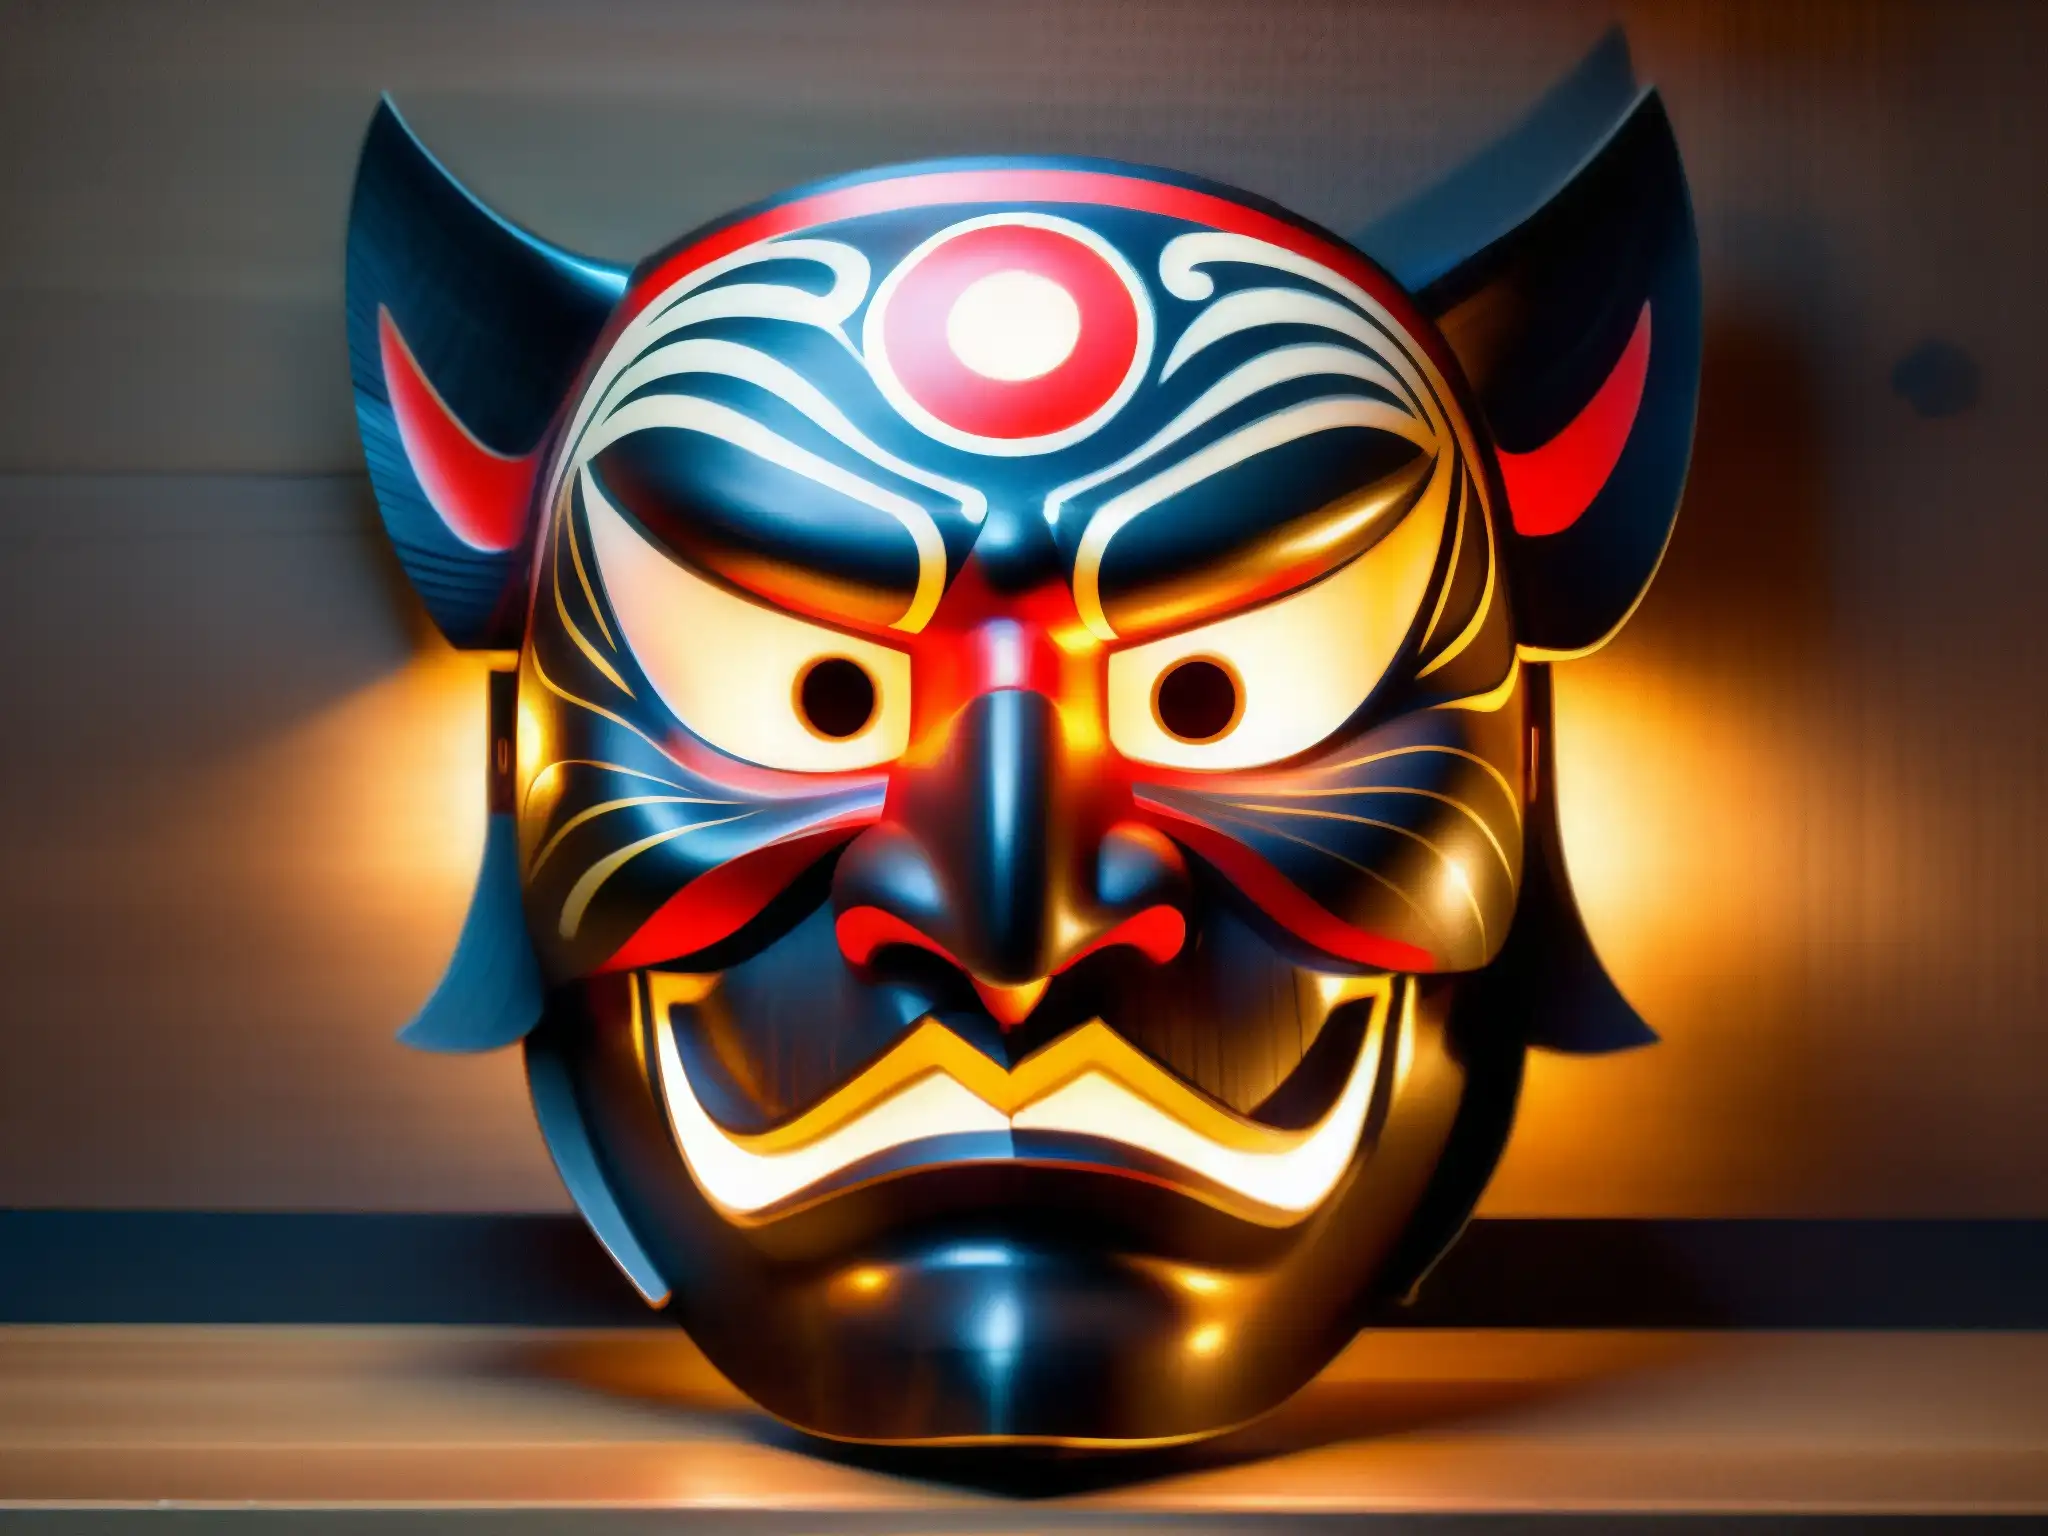 Una máscara tradicional japonesa Tengu iluminada por la luz de las velas, revelando sus detalles y creando un ambiente enigmático